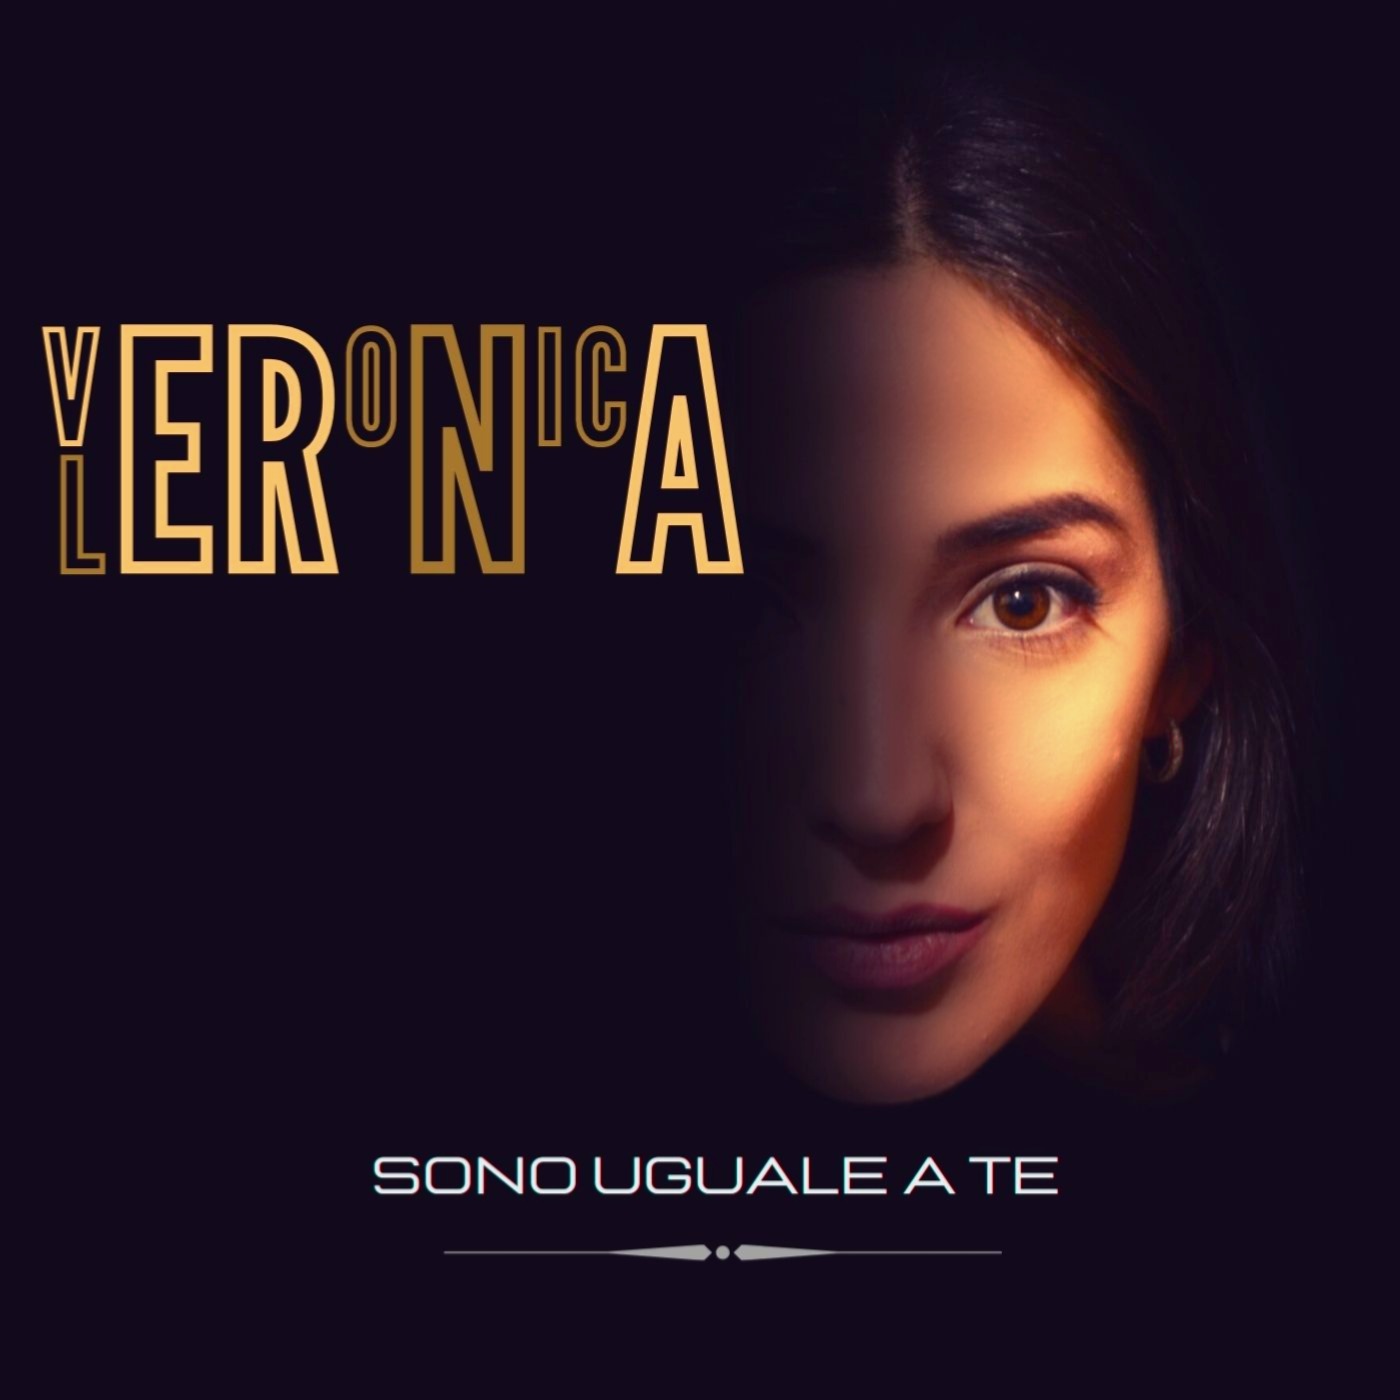 “Sono uguale a te”: il singolo della brindisina Veronica Lerna in uscita il 9 gennaio